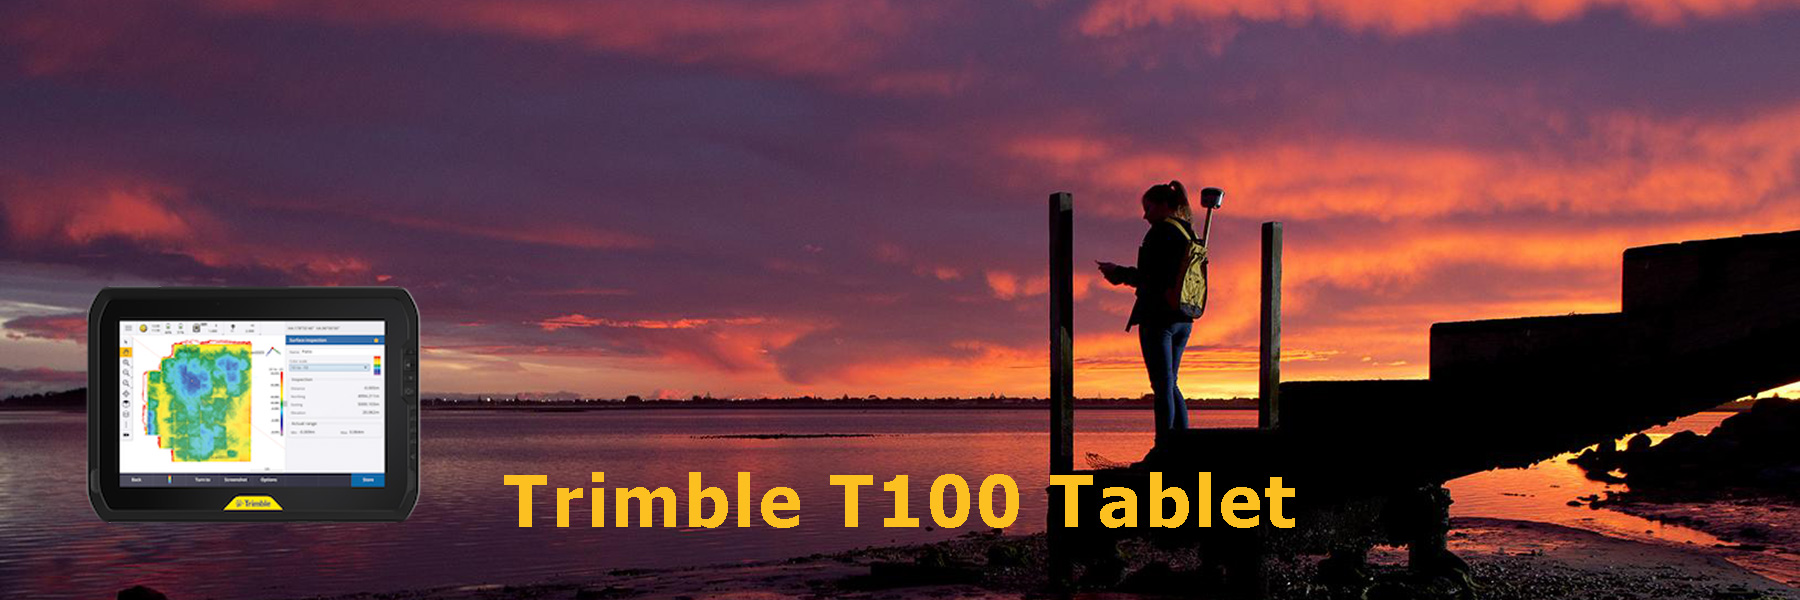 Trimble T100 Tablet